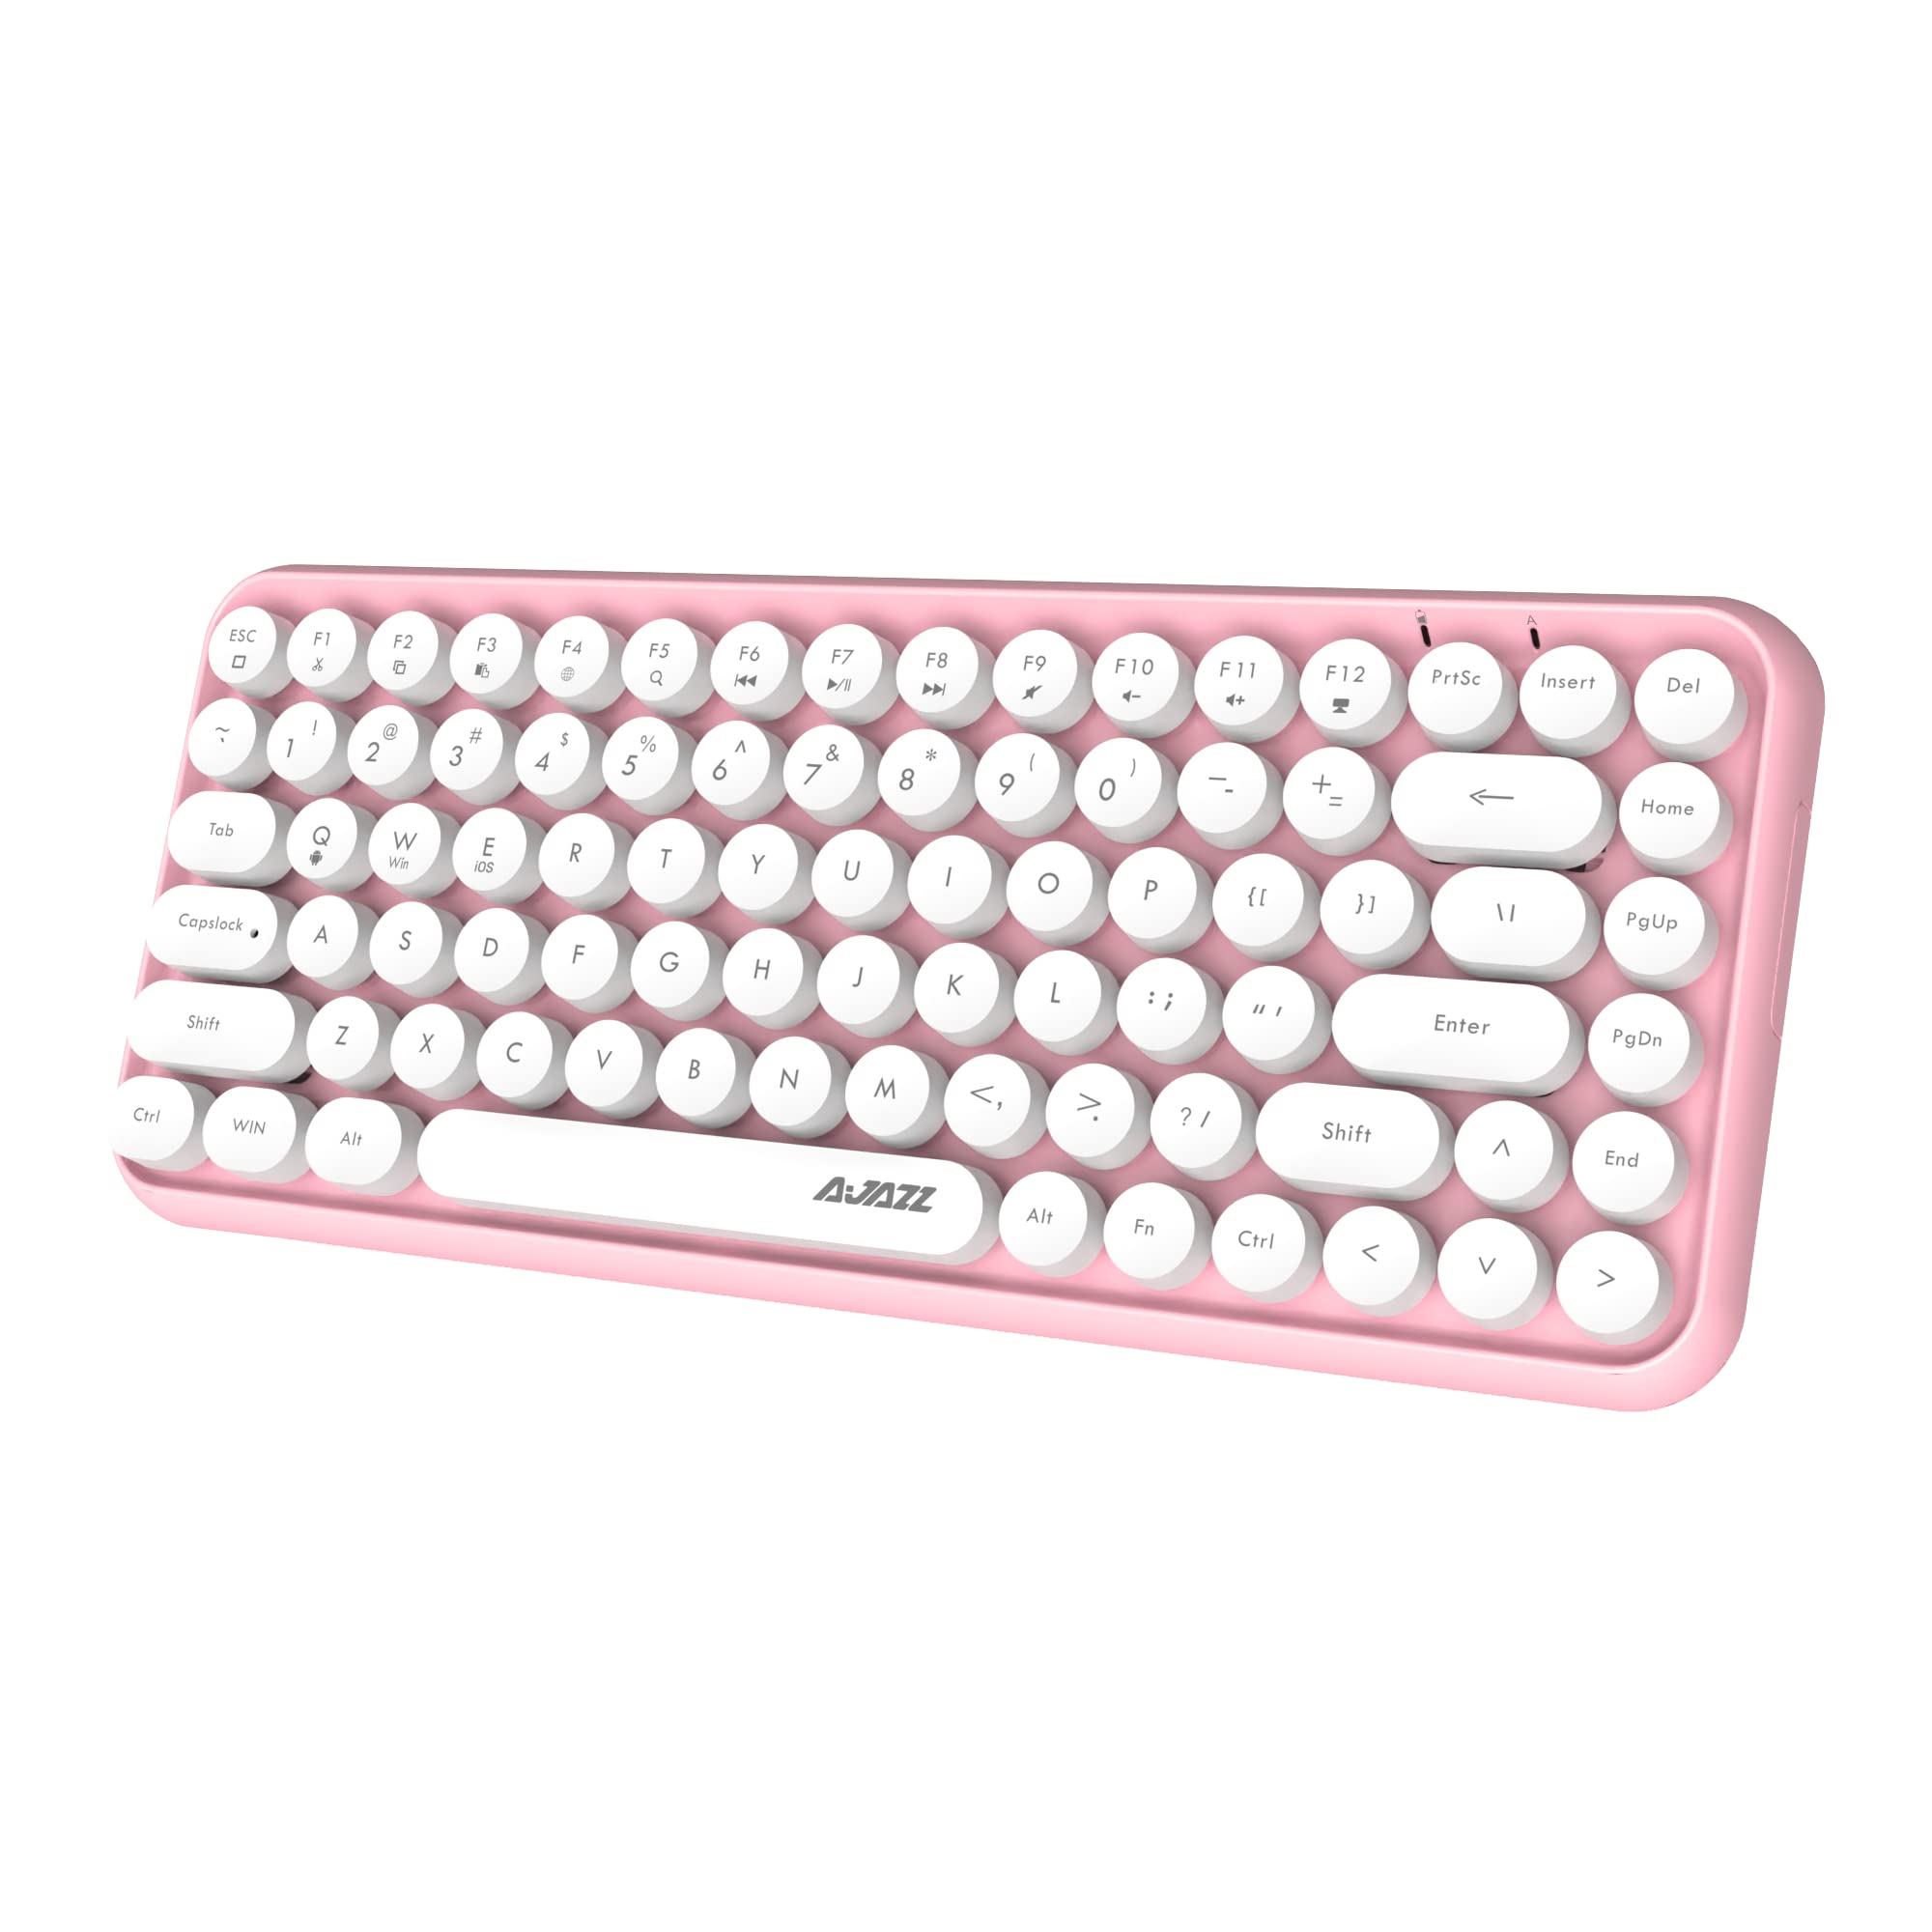 Hoopond Kabellose Bluetooth-Tastatur, Niedliche Mini-Kompakttastatur mit 84 Tasten, 2,4 GHz kabellose Bluetooth-Verbindungstechnologie, ABS-Retro-runde Tastenkappe, Ergonomisches Design (Rosa)